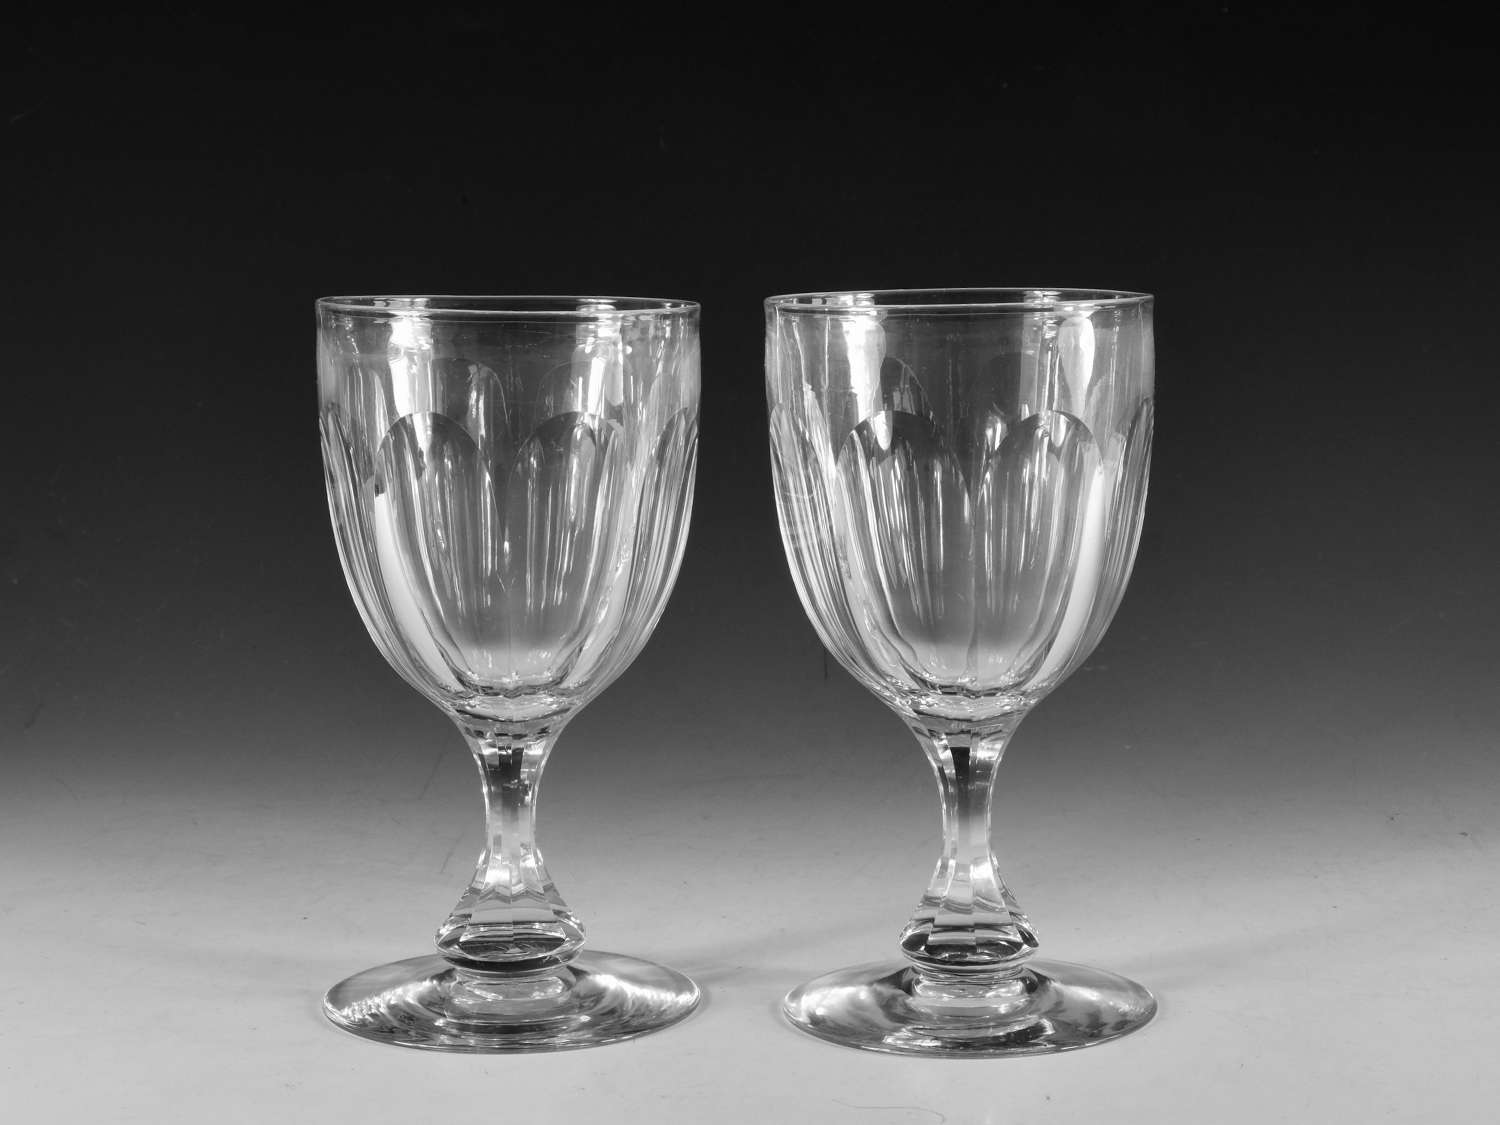 Antique glass goblets cut glass pair c1860